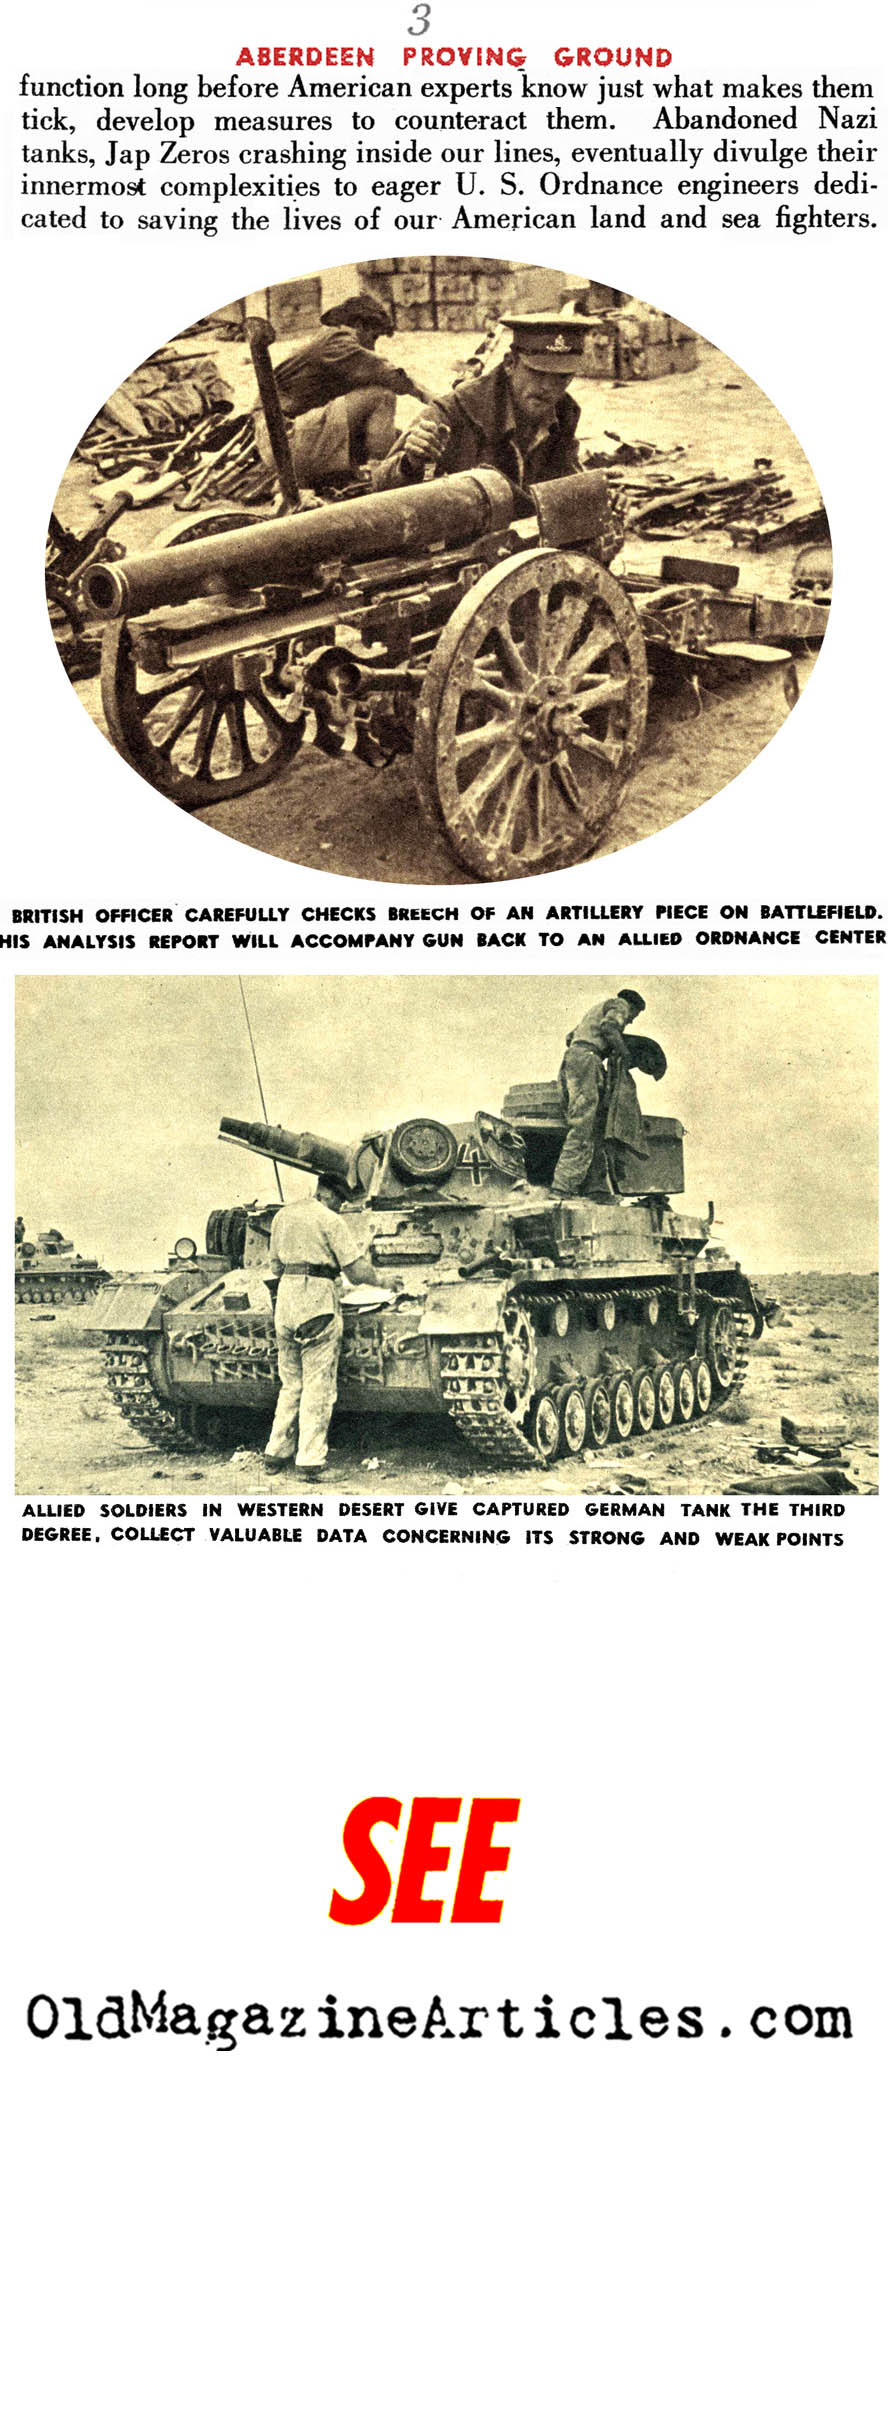 Examining Axis War Material (See Magazine, 1944)